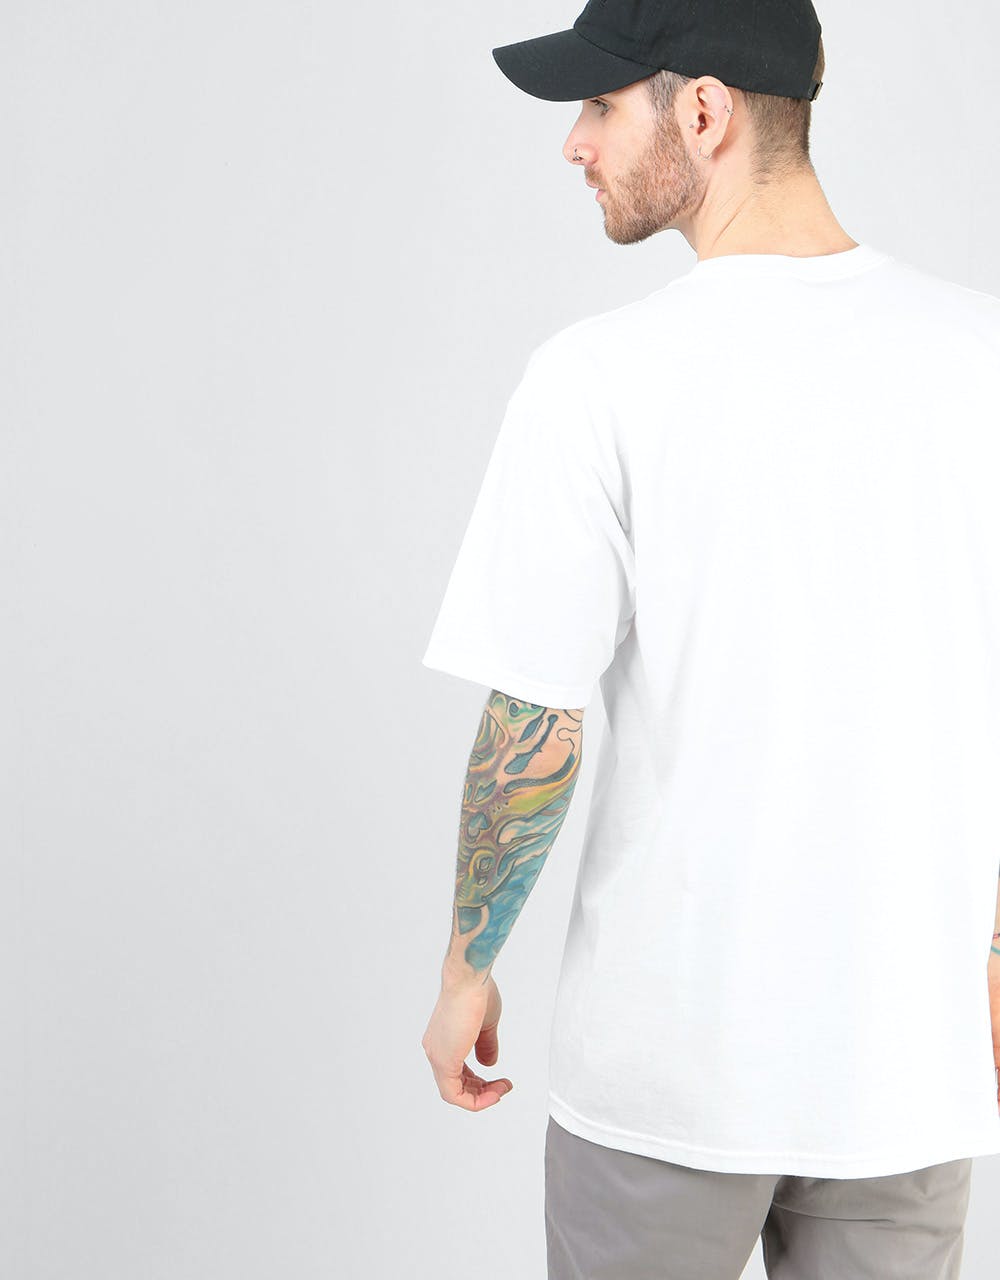 Zero Single Skull T-Shirt - White/Black